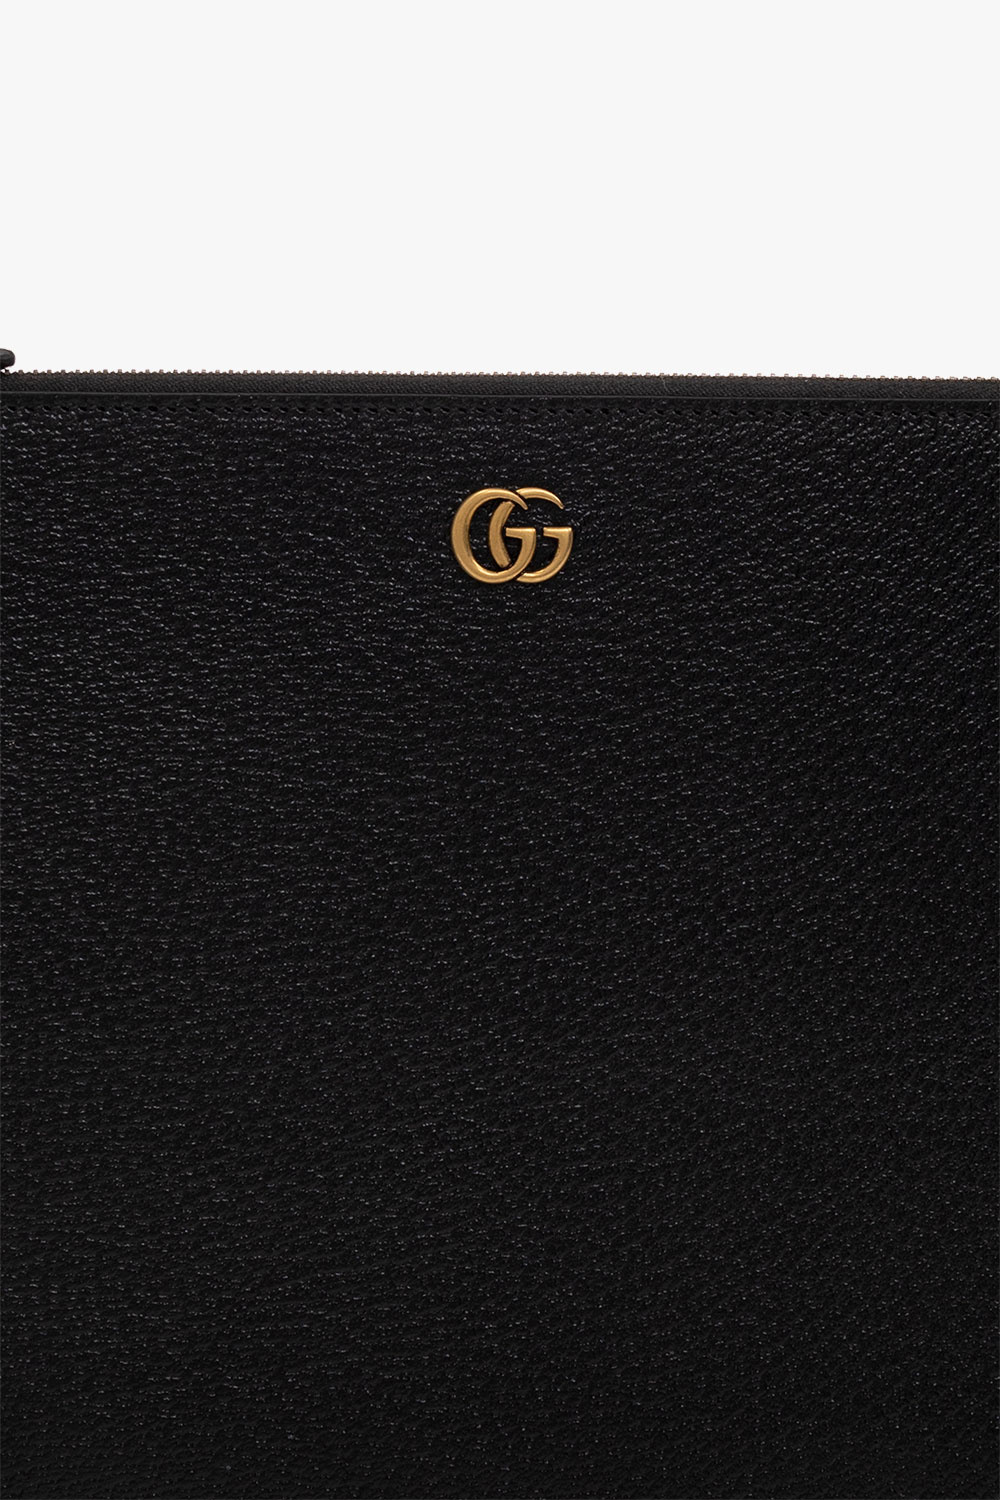 Gucci ‘GG Marmont’ handbag